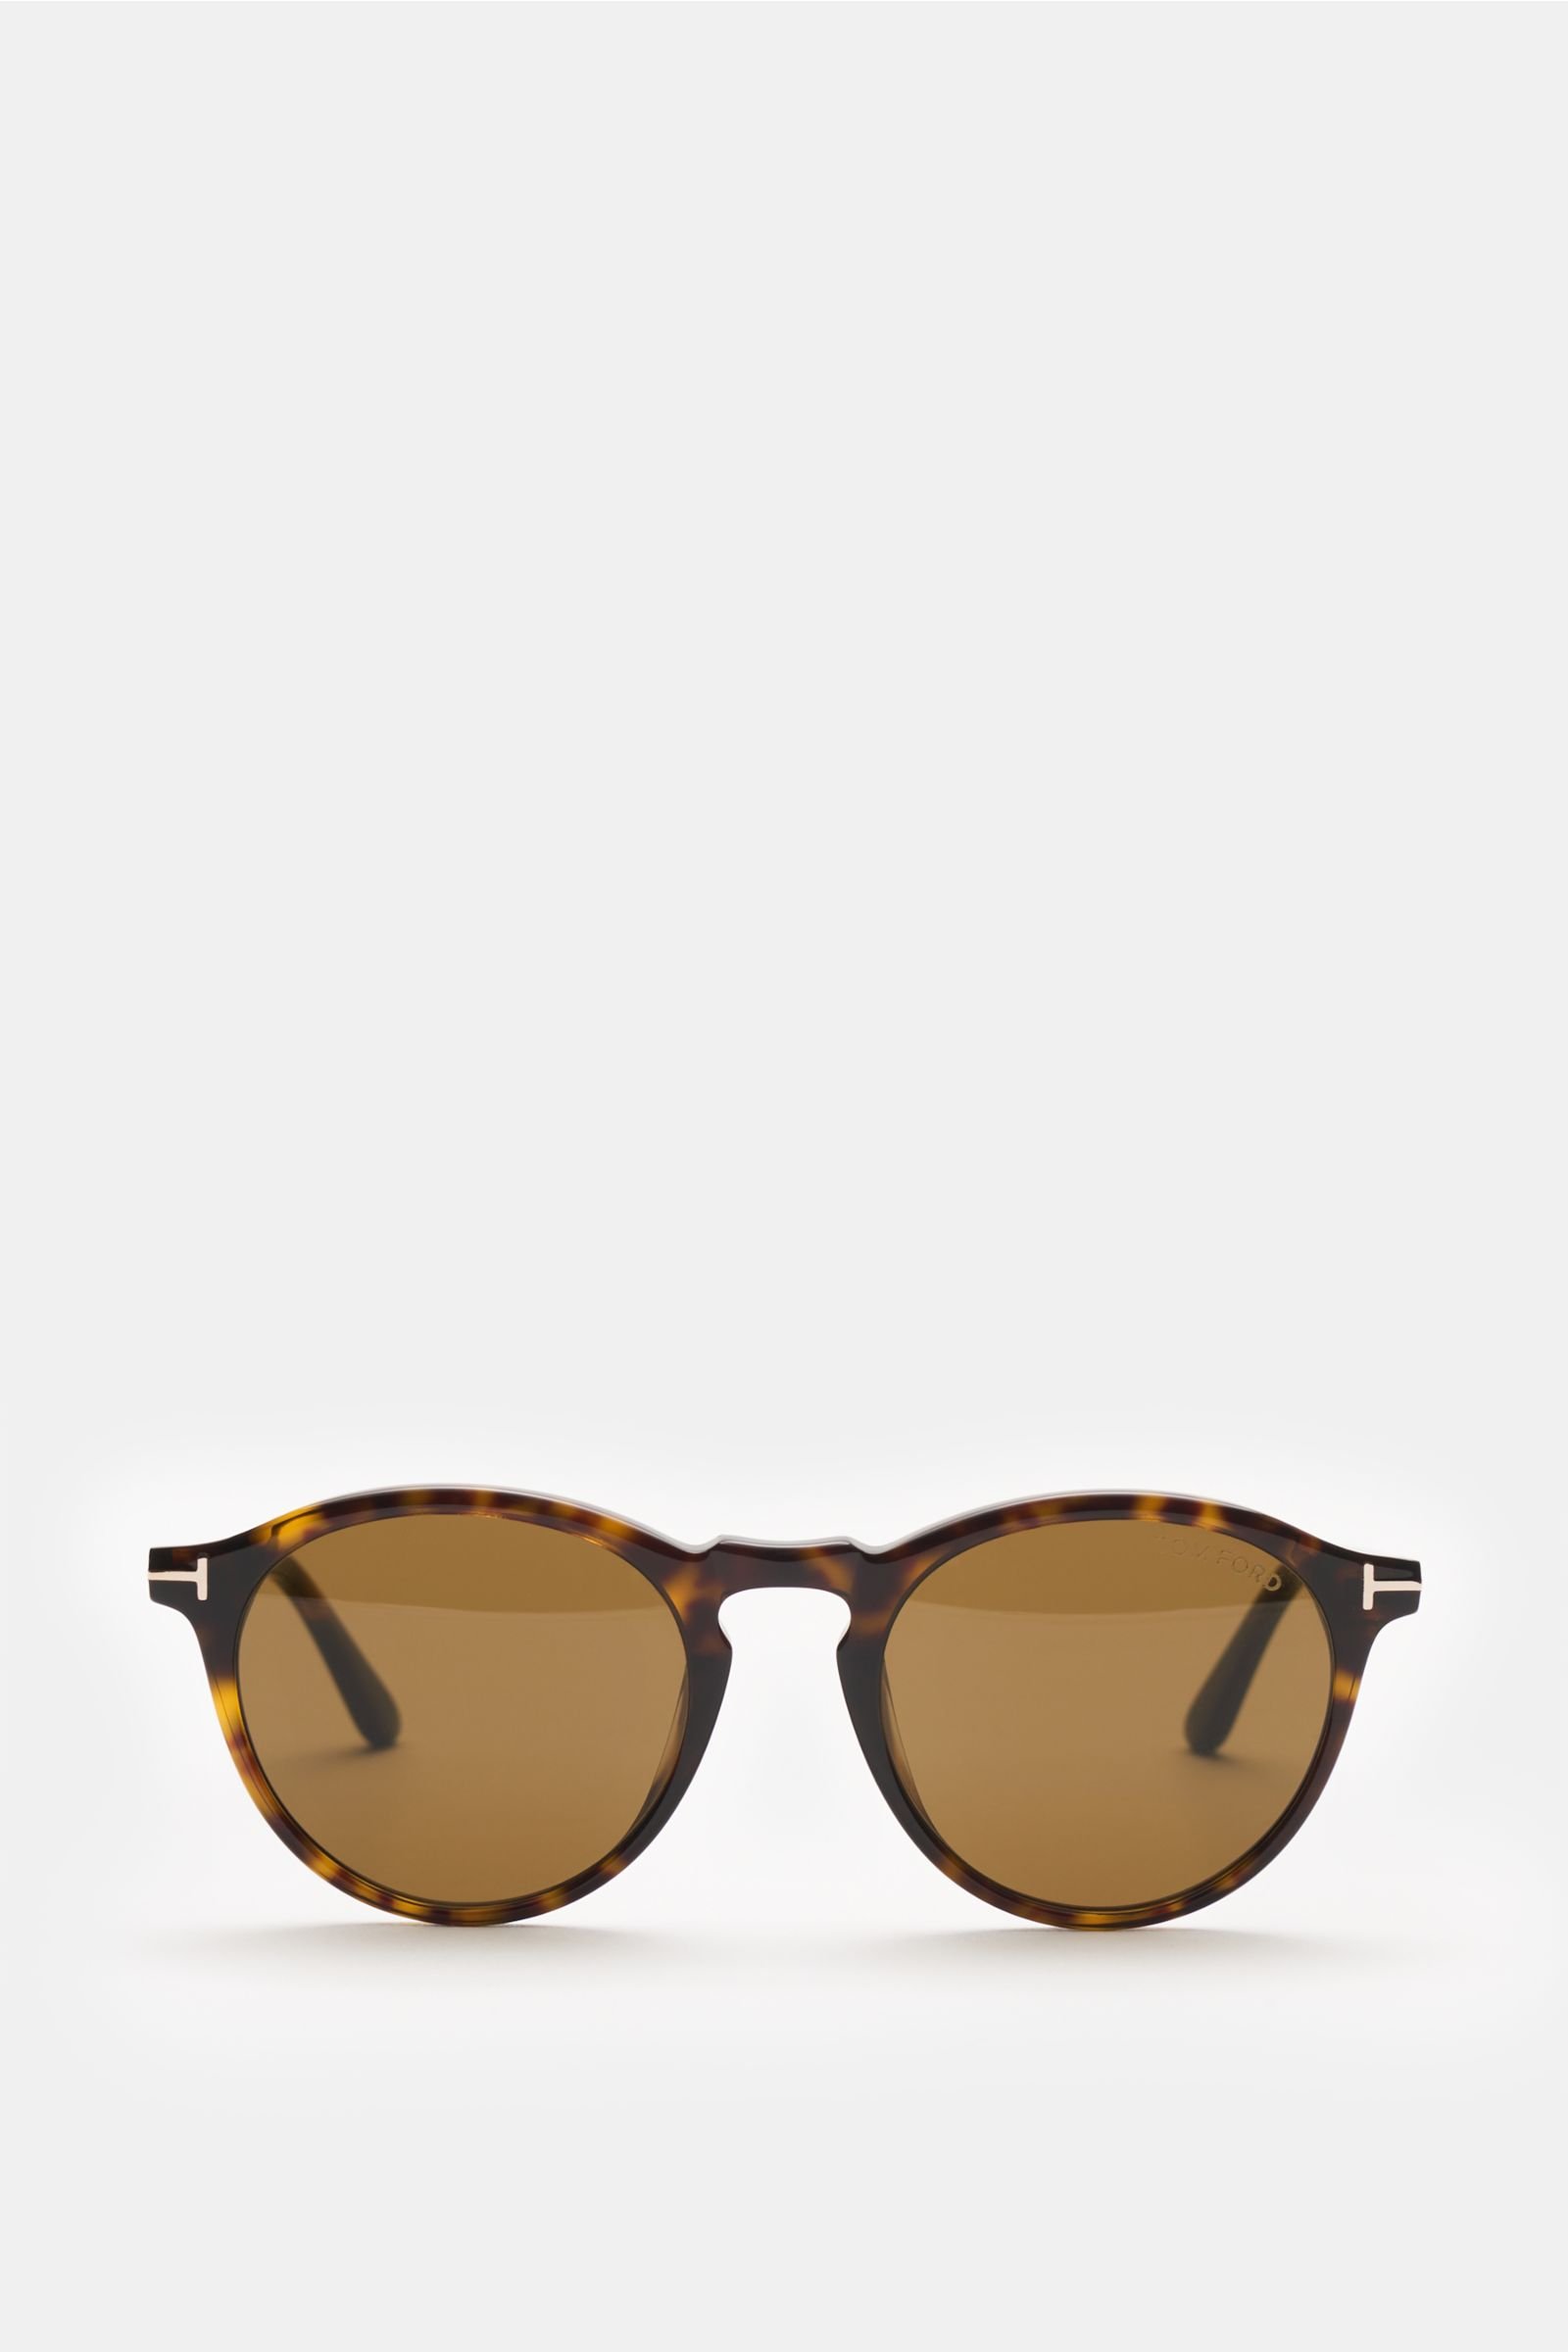 Sunglasses 'Aurele' dark brown patterned/brown